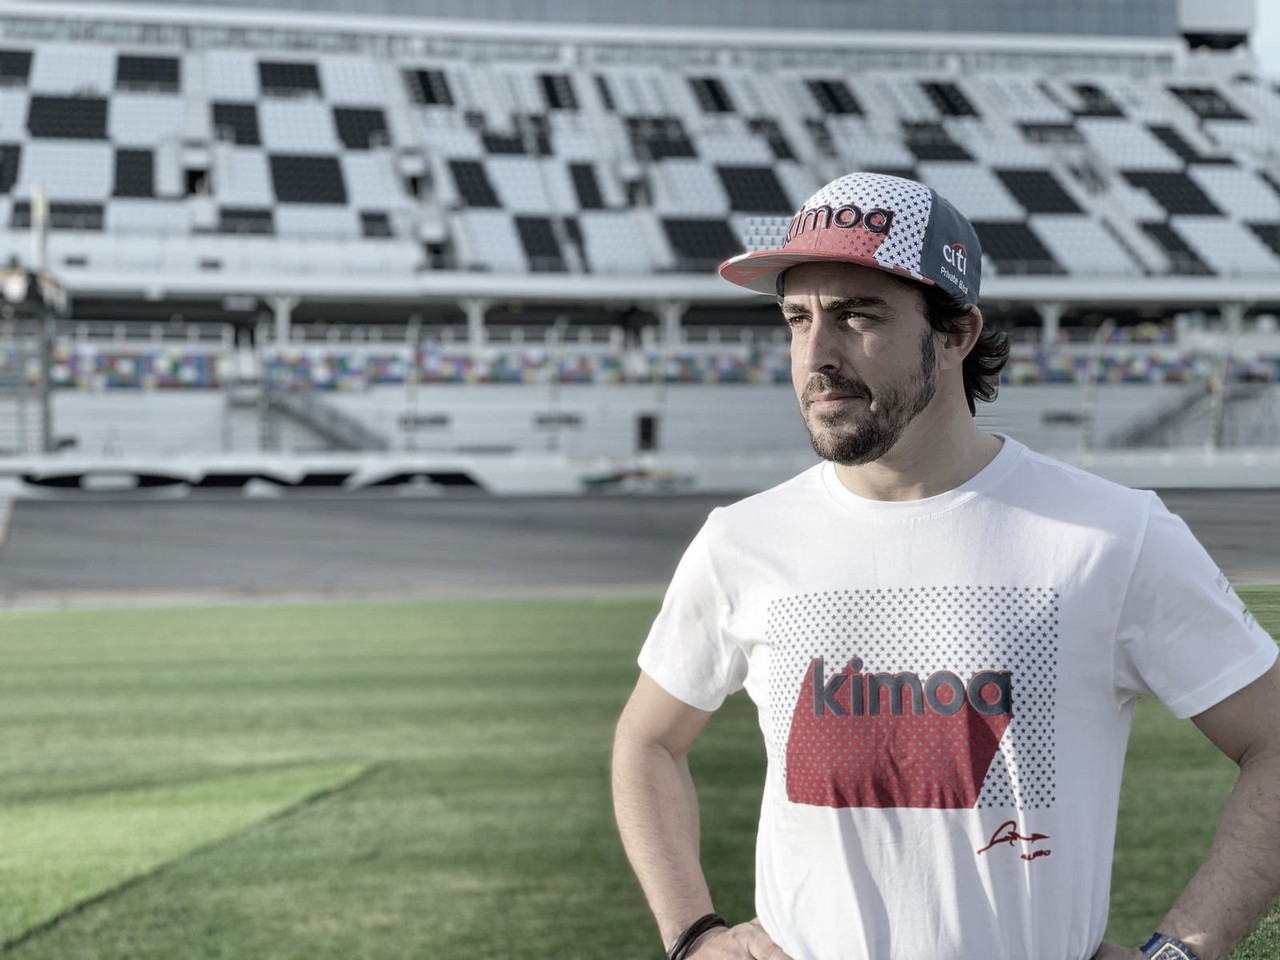  El posible retorno de Alonso a la Fórmula 1